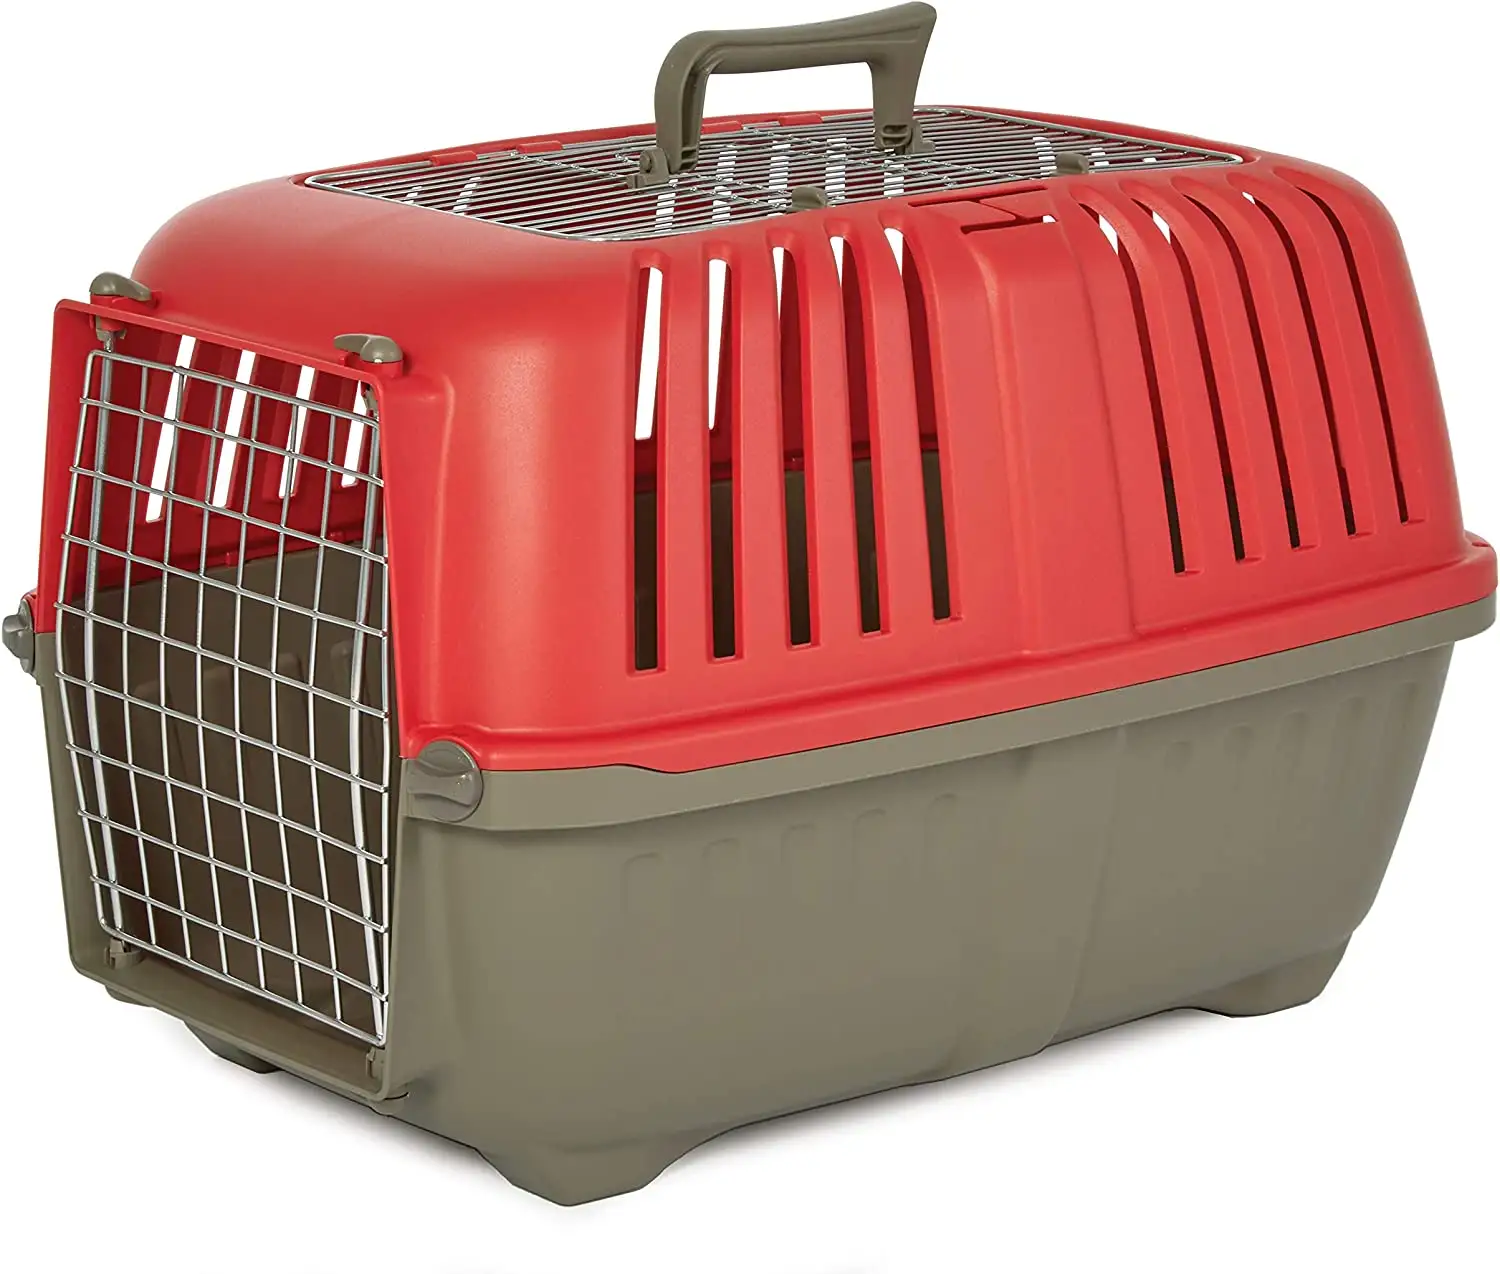 Fornitori di casse per animali domestici nuovo 2023 all'ingrosso migliori gabbie per gatti portatili approvate dalla compagnia aerea dog box house outdoor travel Pet carrier